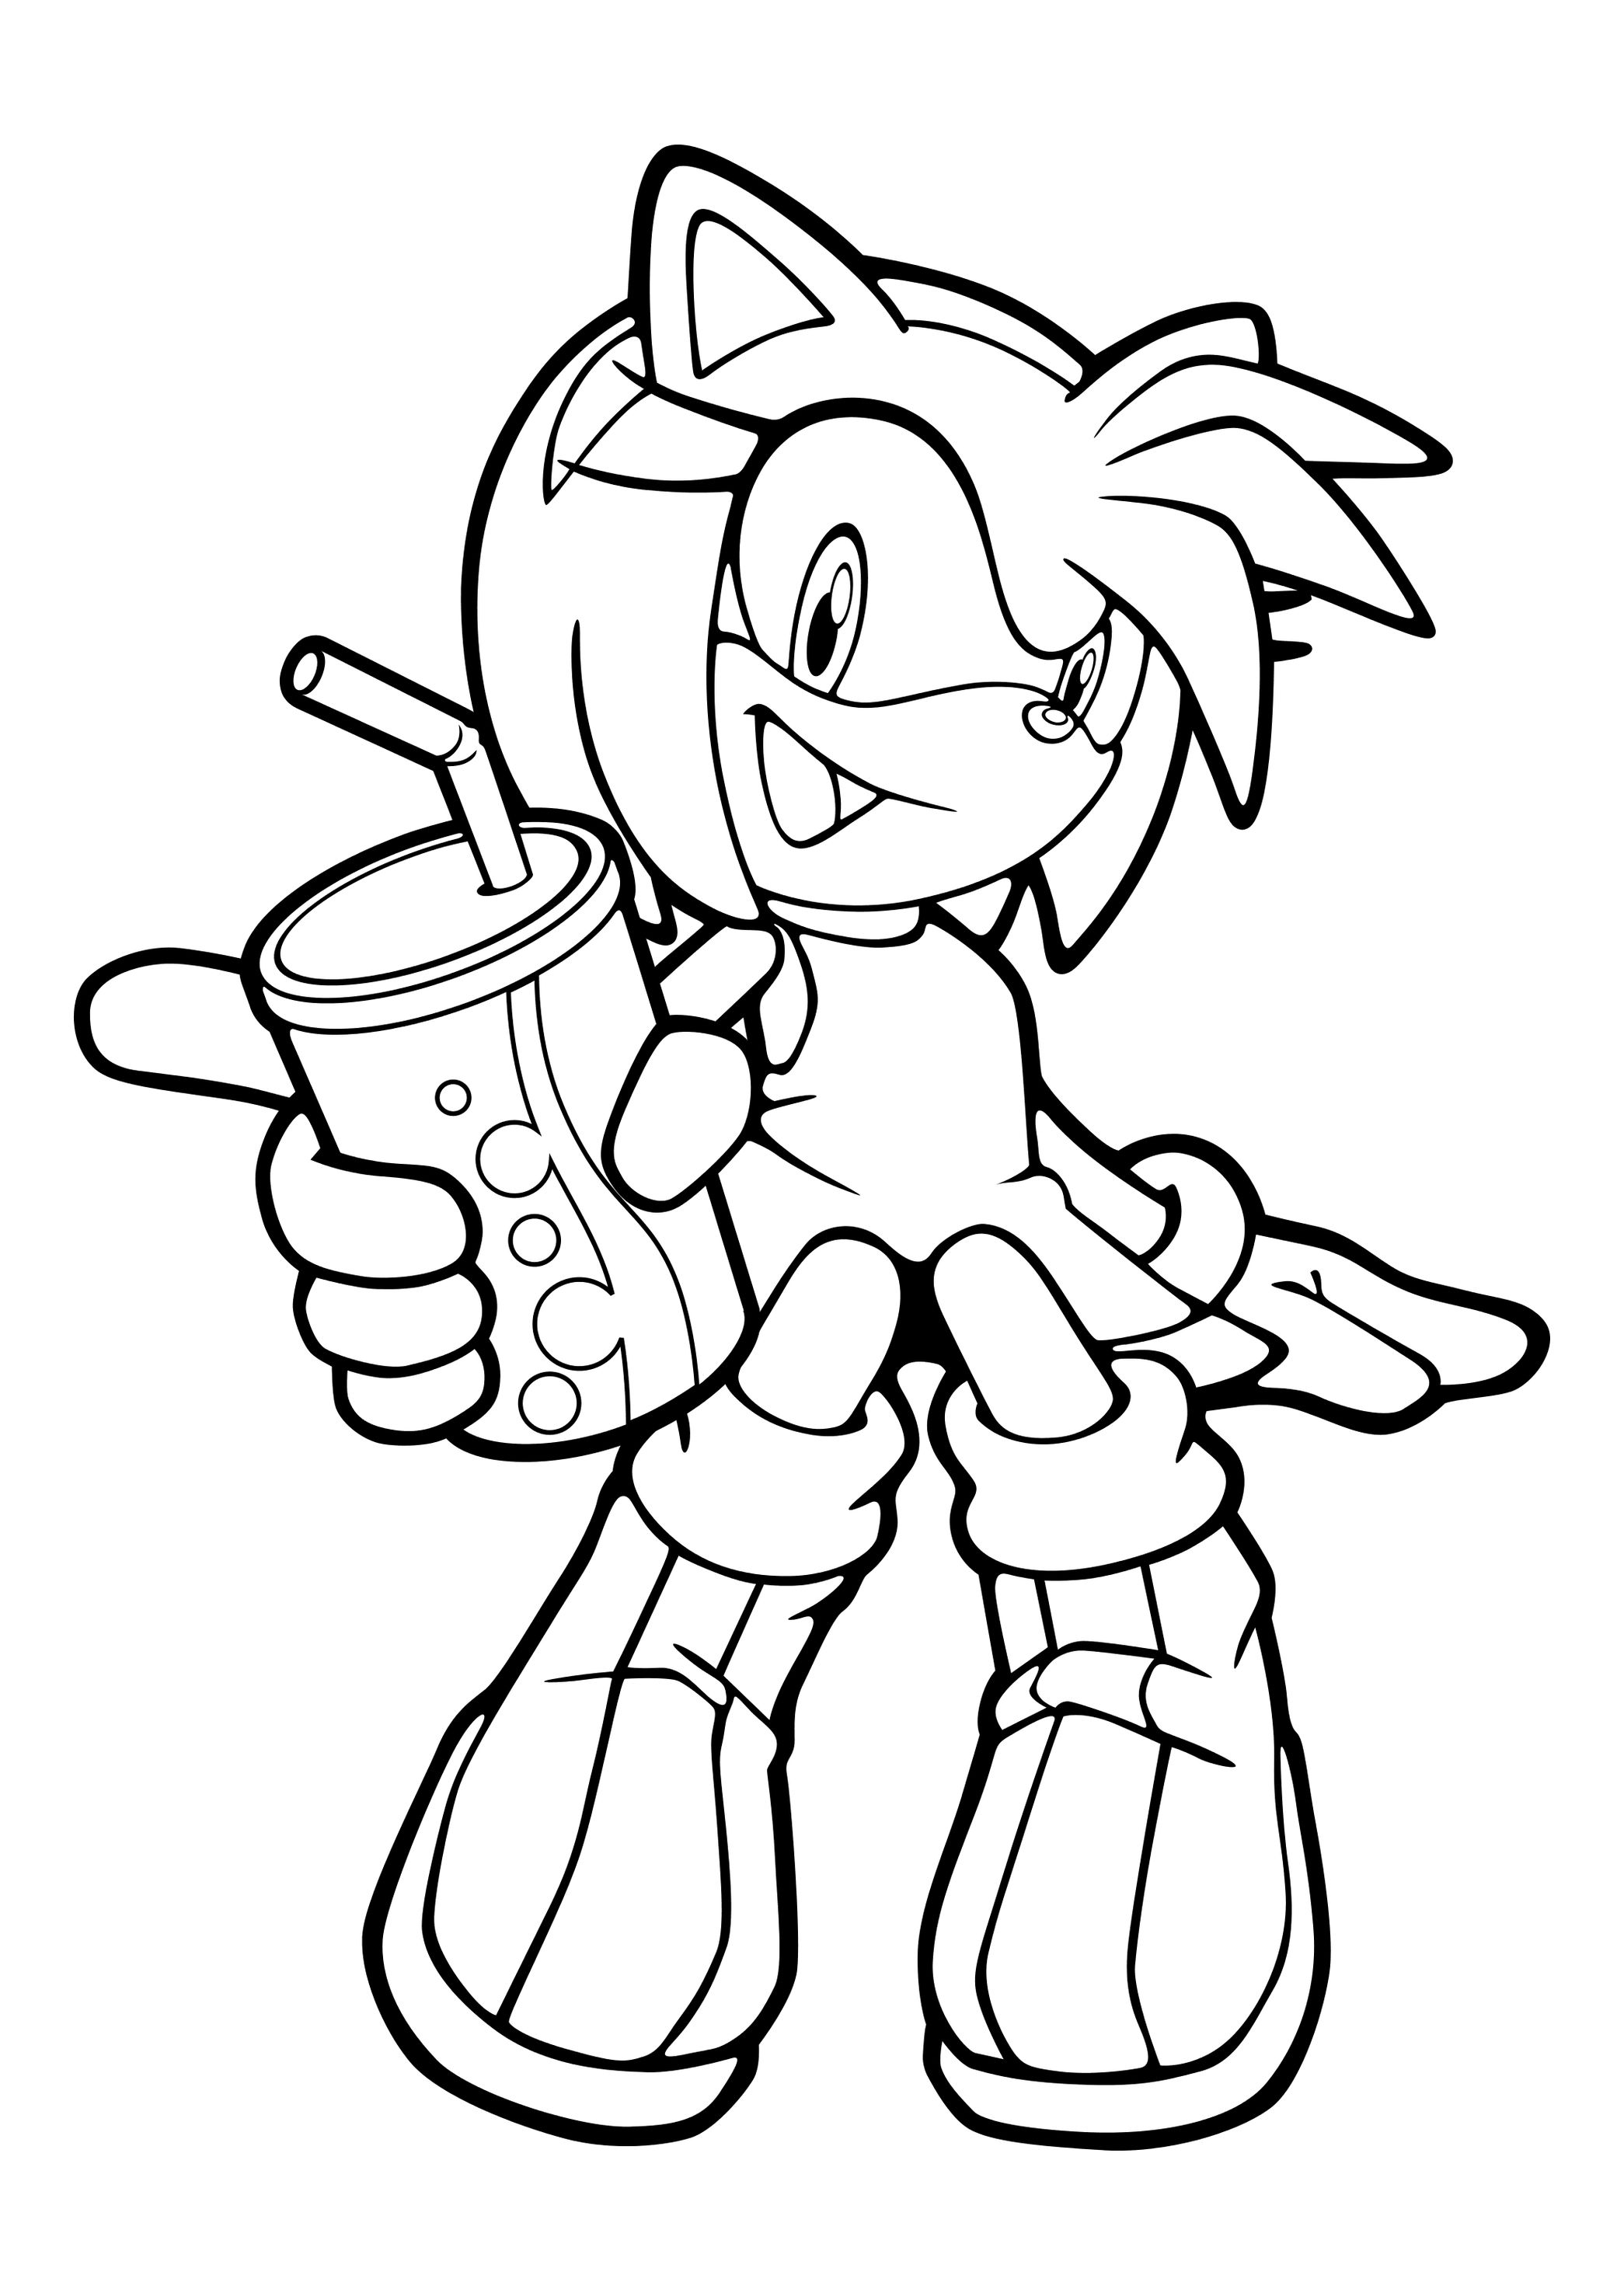 Desenho de Sonic e amiga para colorir - Tudodesenhos